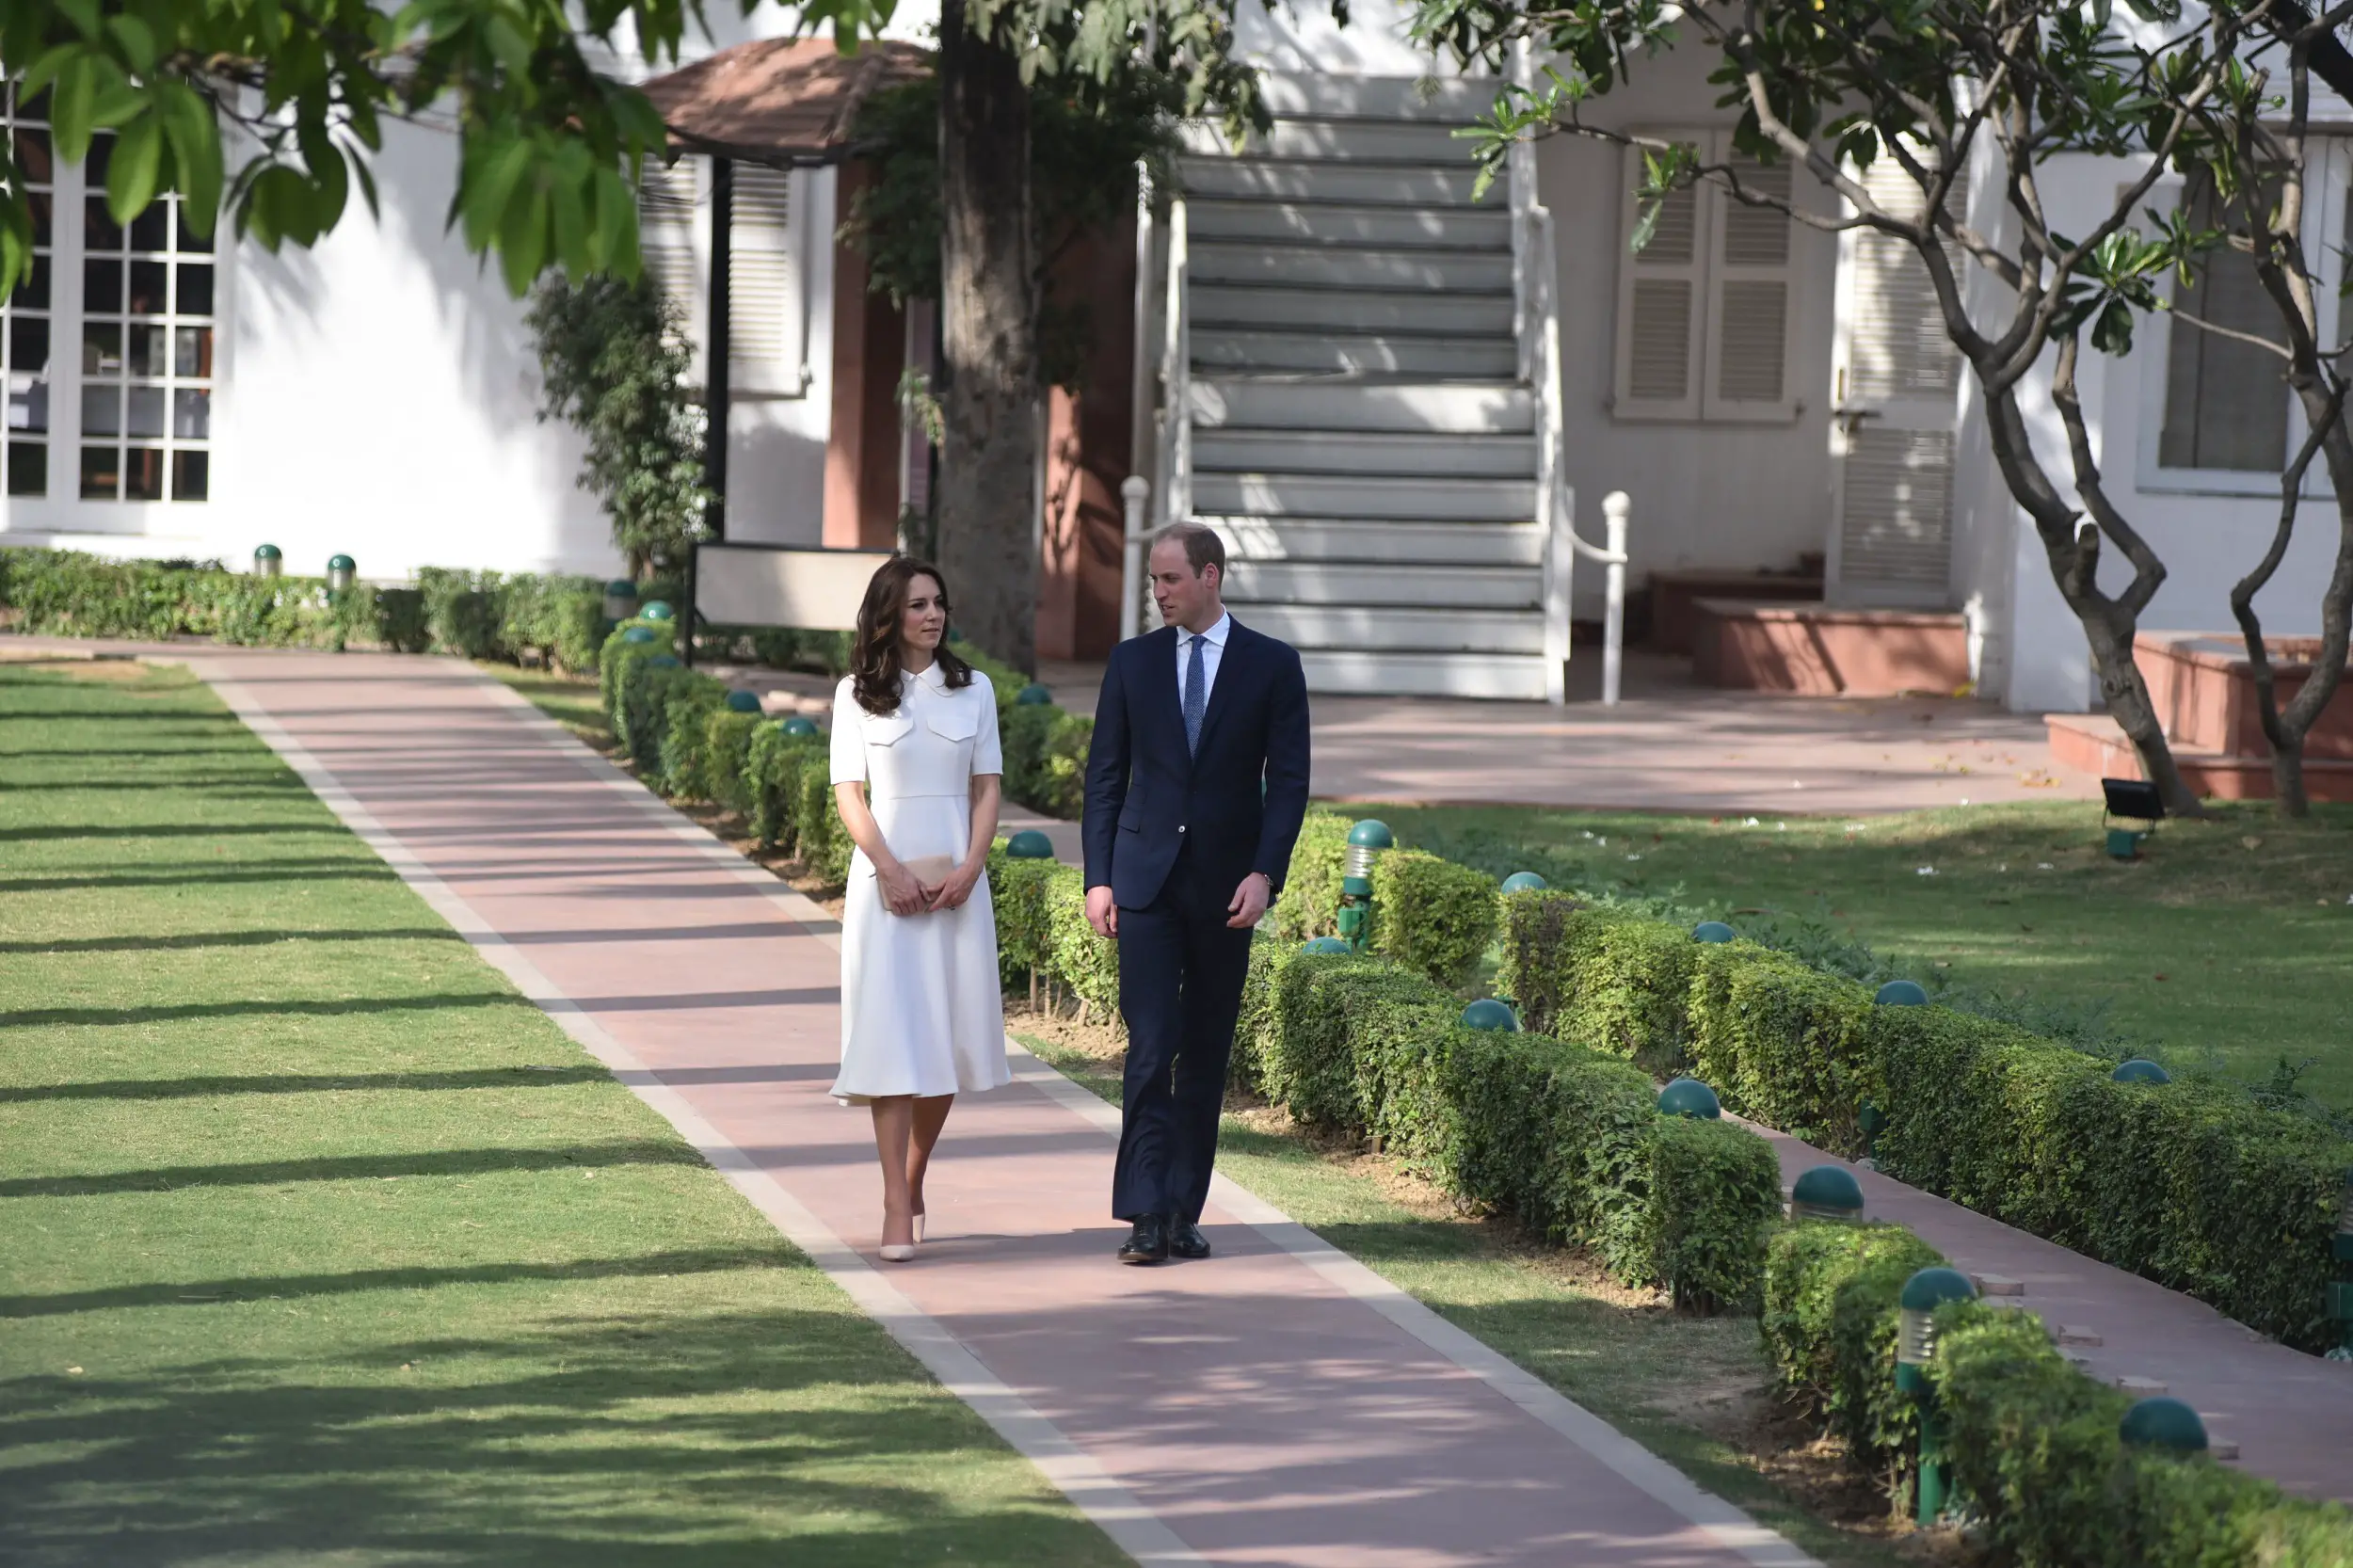 The Duke and Duchess of Cambridge visited Gandhi Smriti